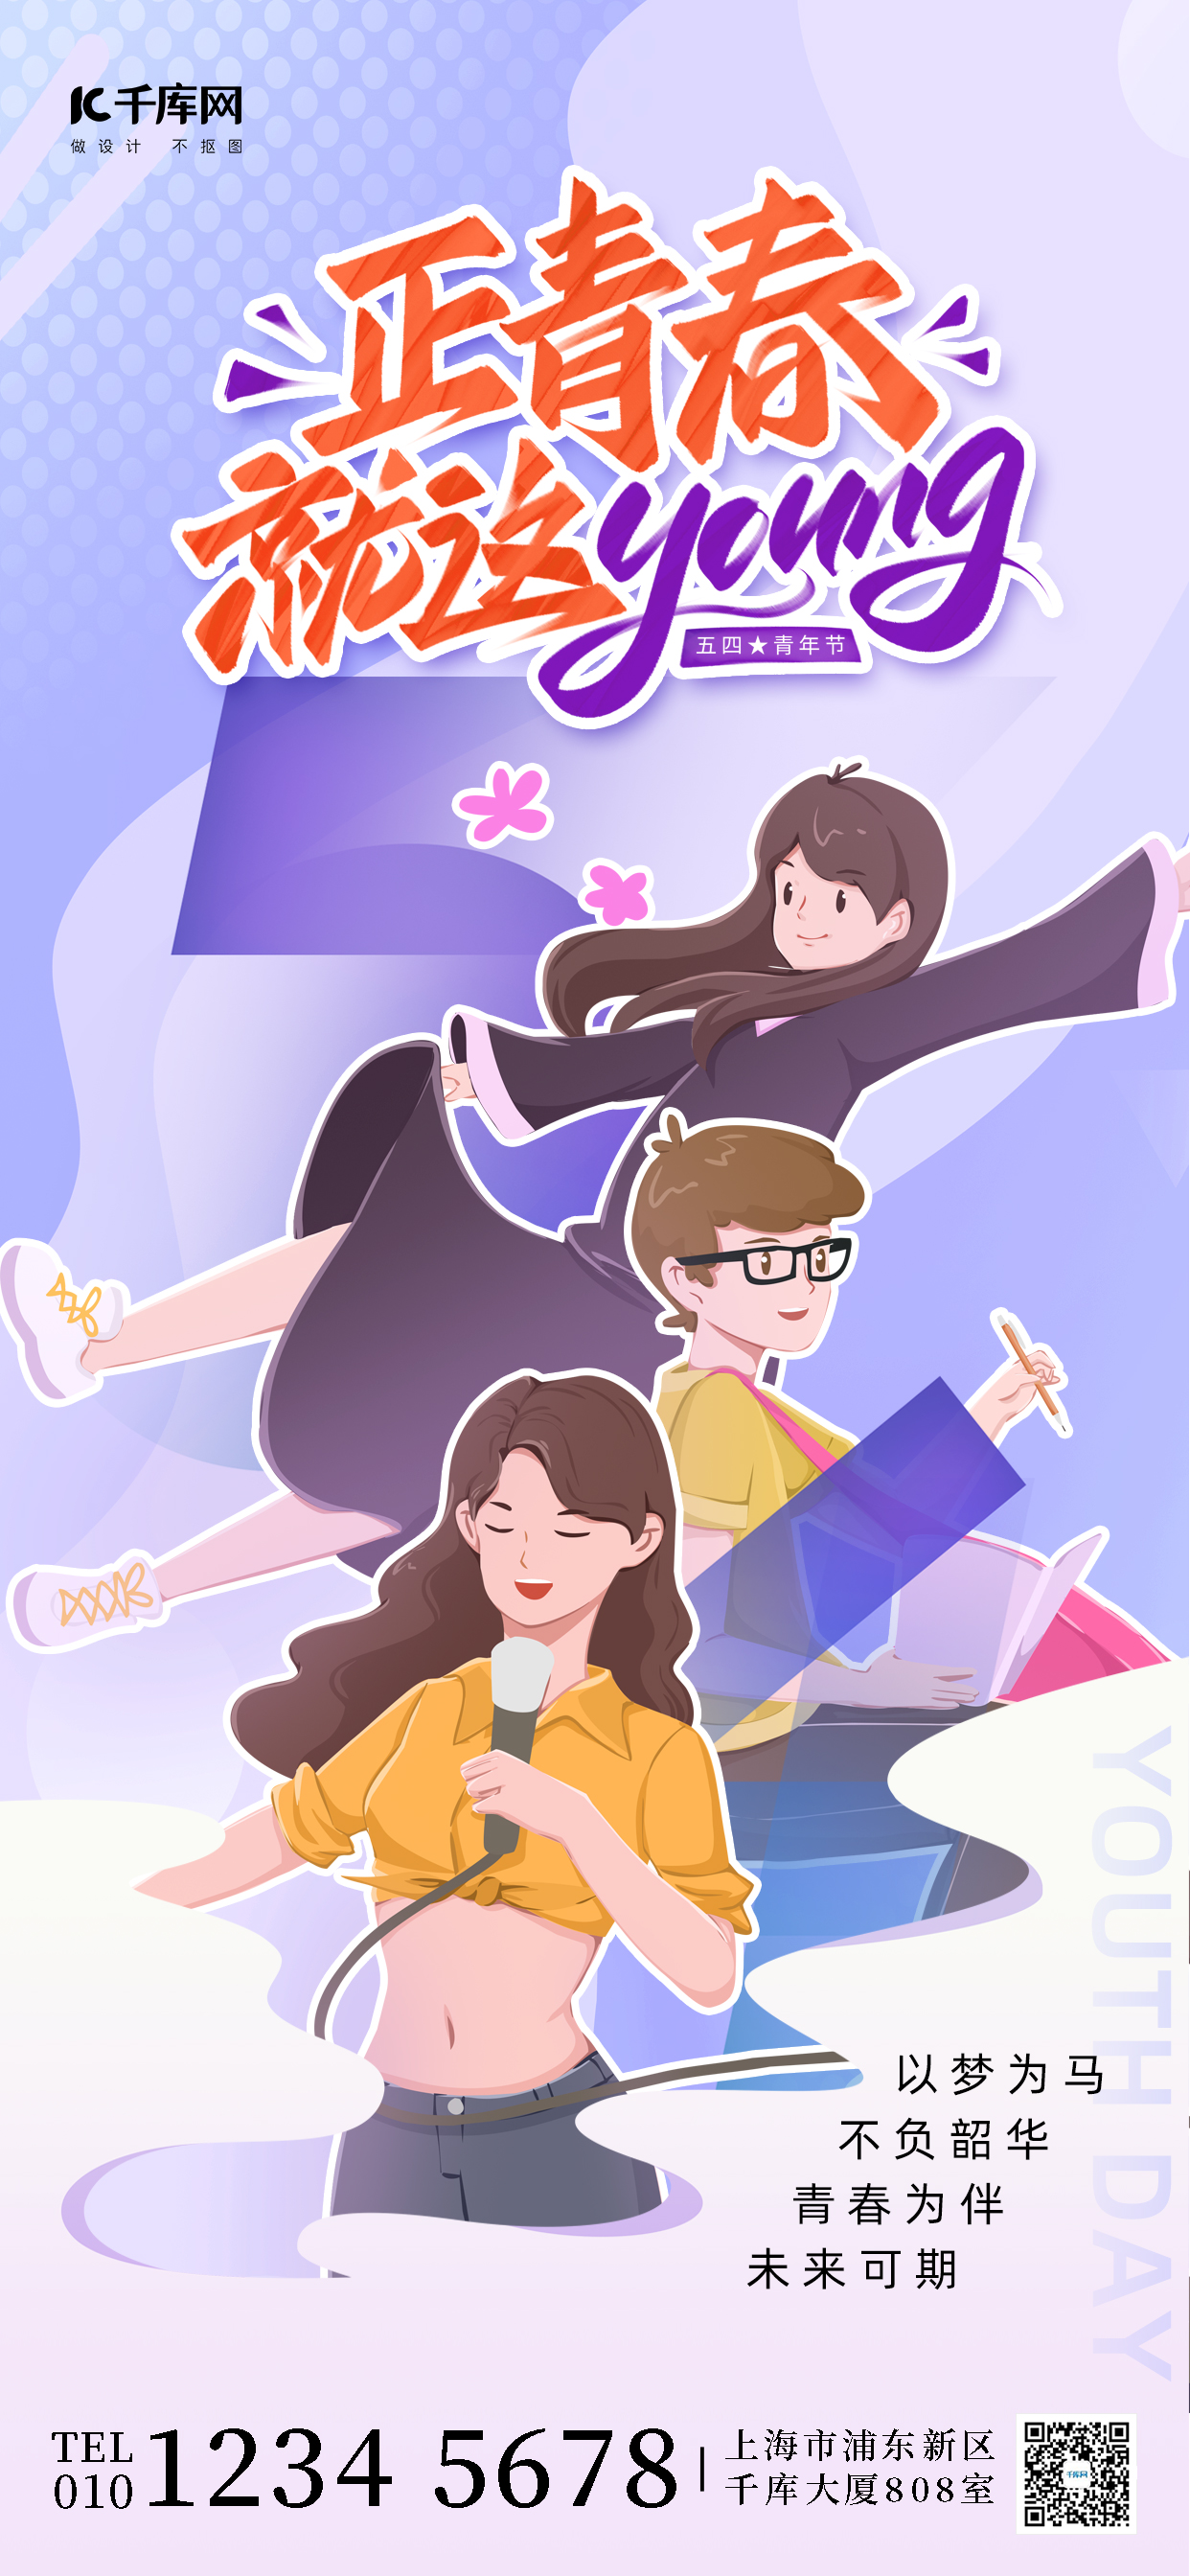 五四青年节紫色插画节日长图海报图片